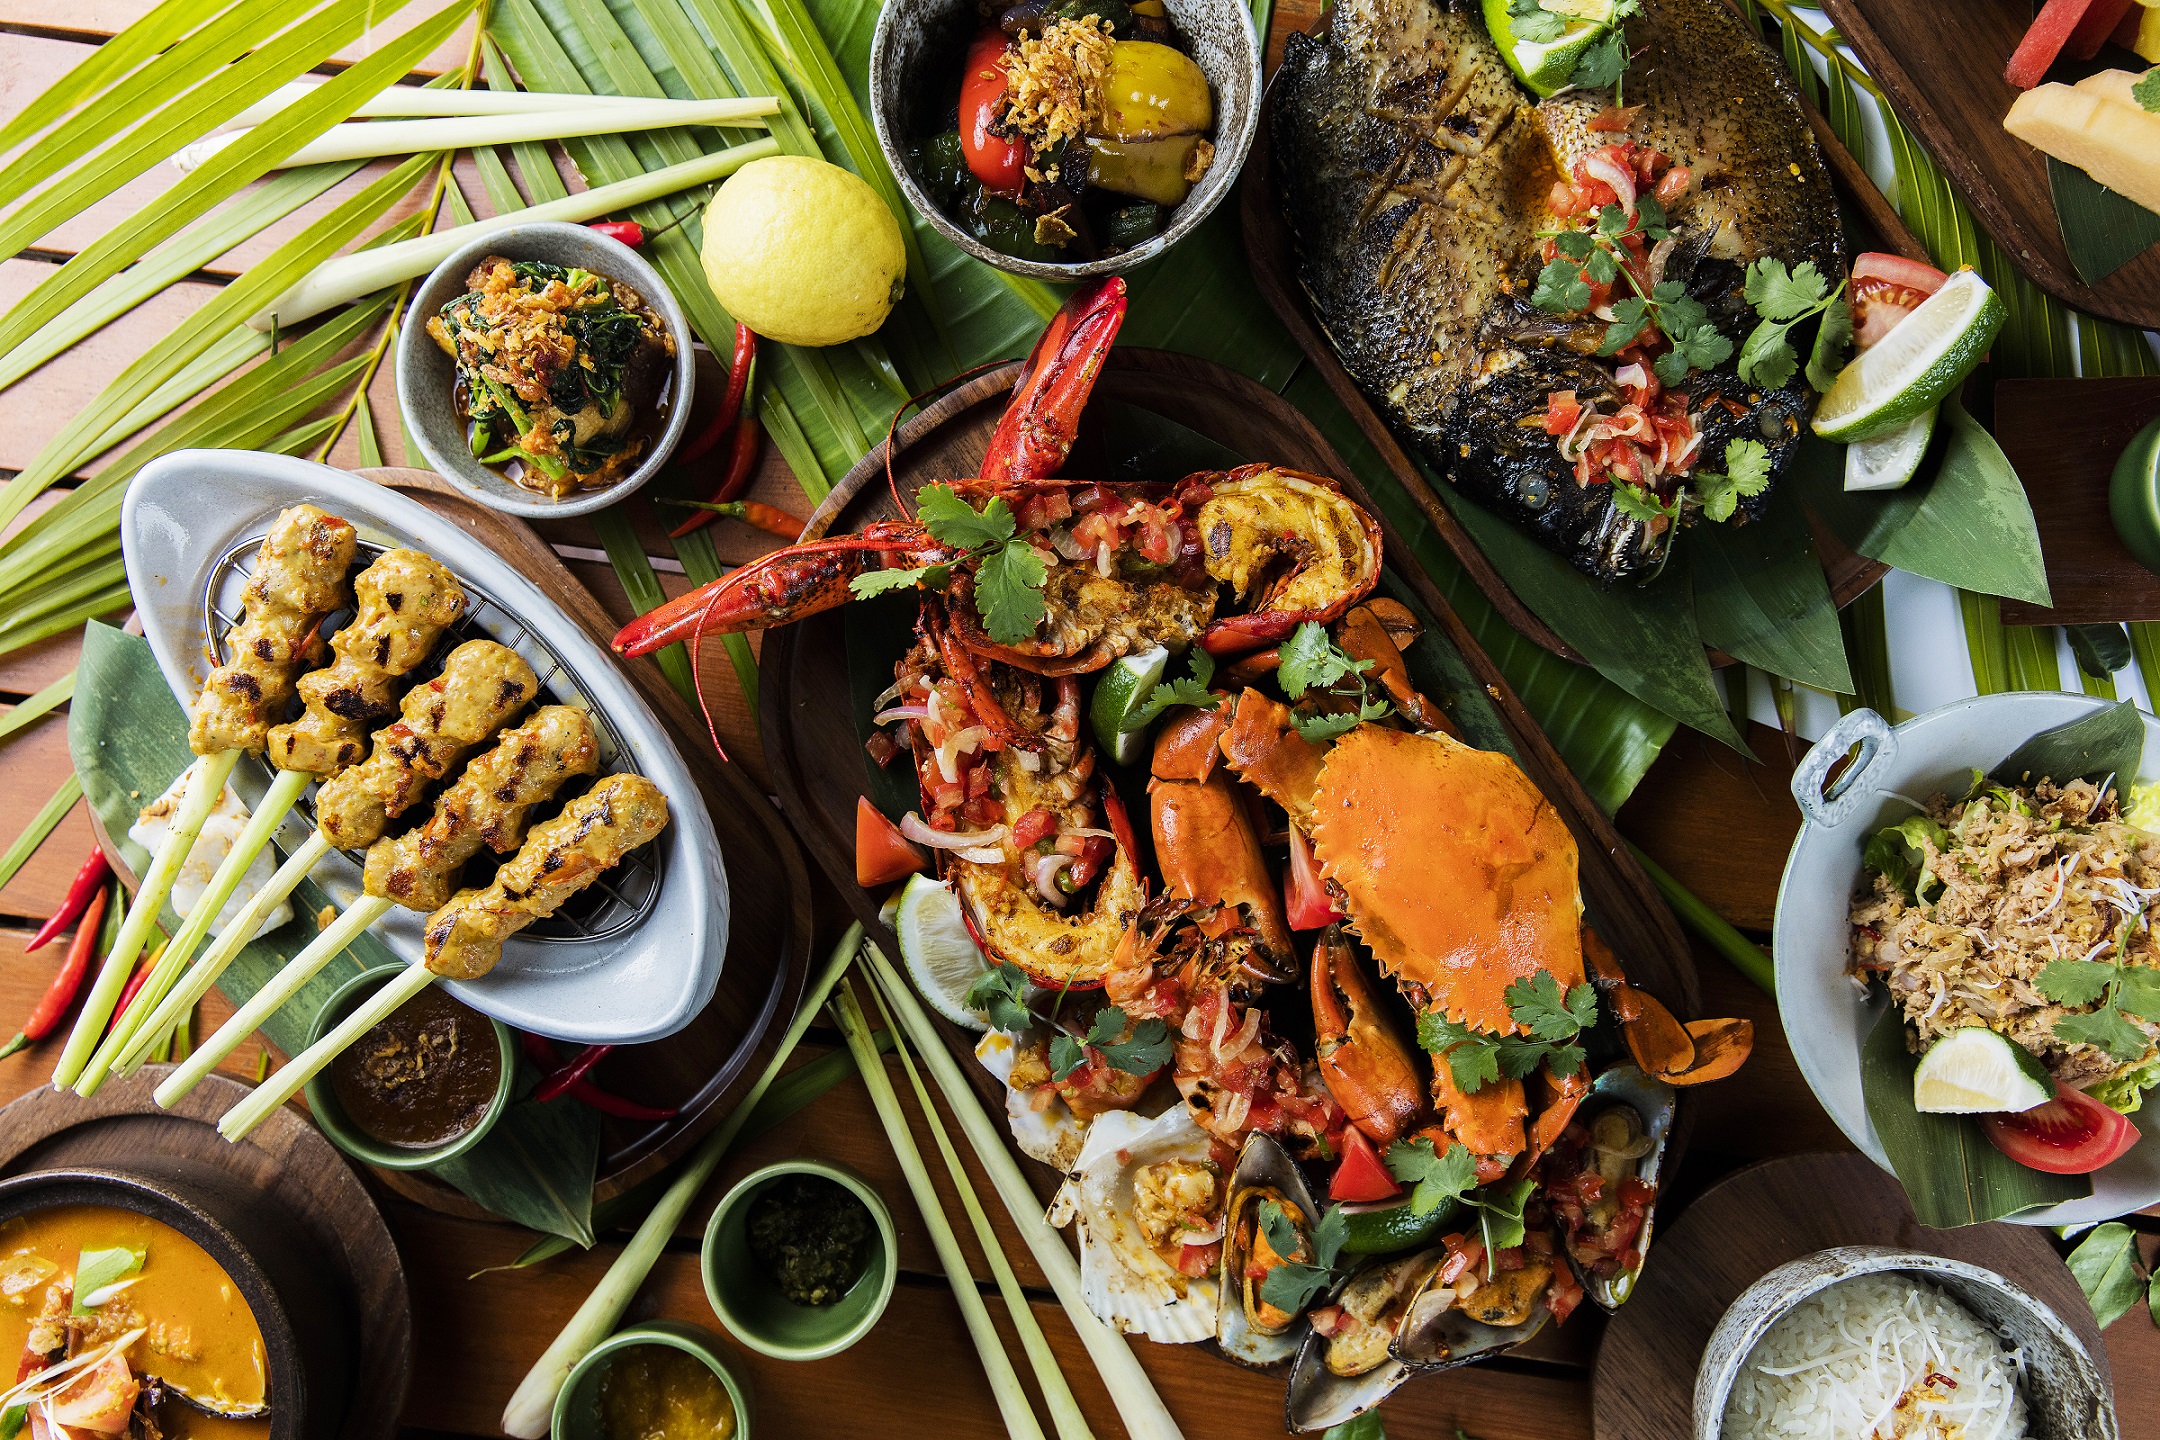 成都富力丽思卡尔顿酒店开启巴厘岛美食水疗体验-中国网地产